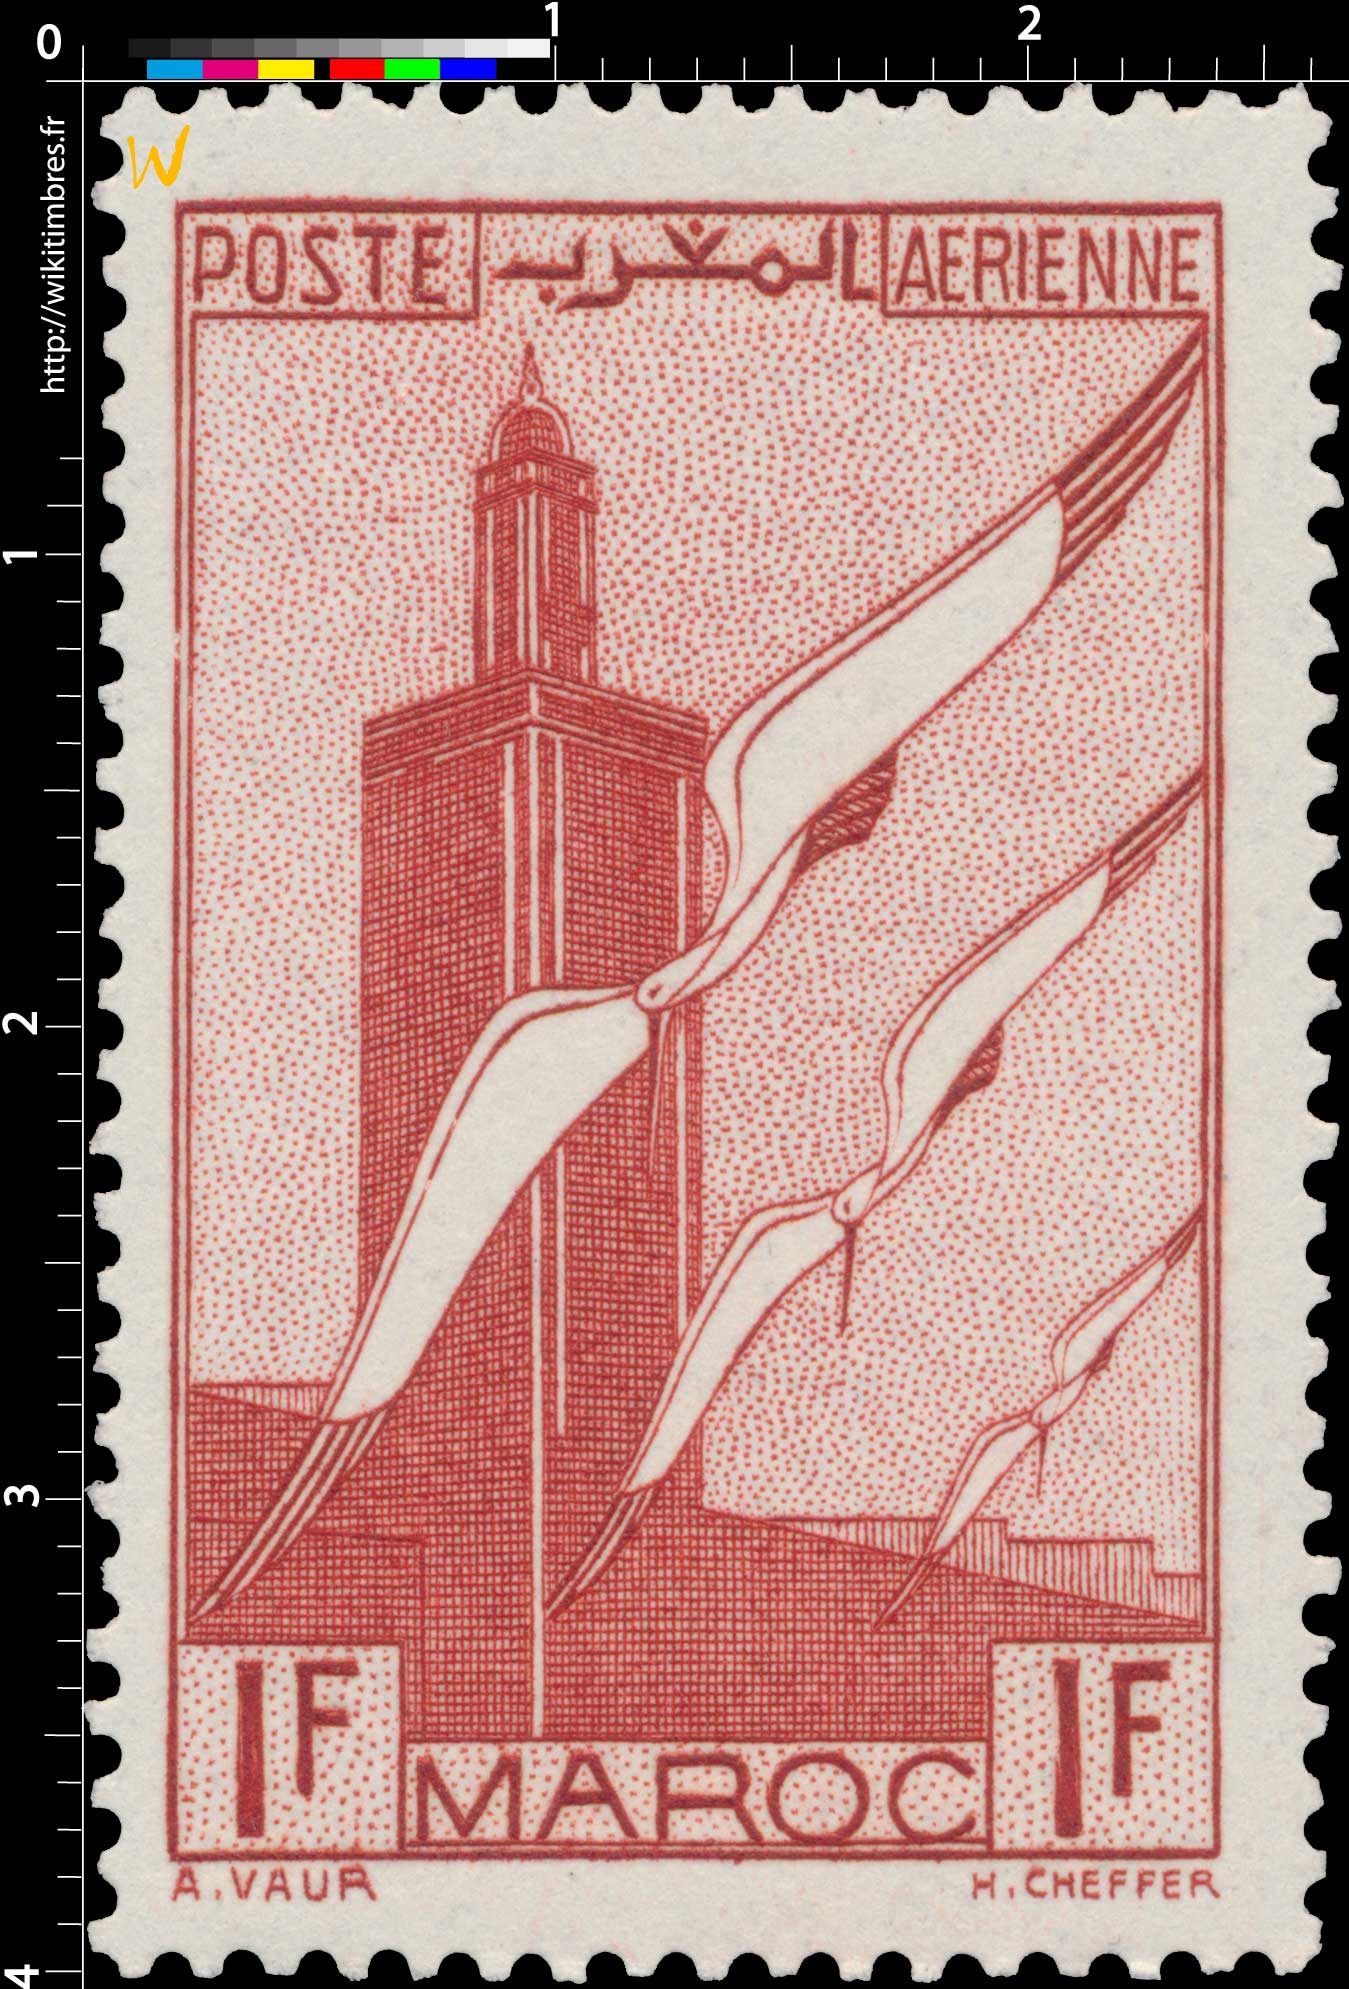 1939 Maroc - Minaret et ailes